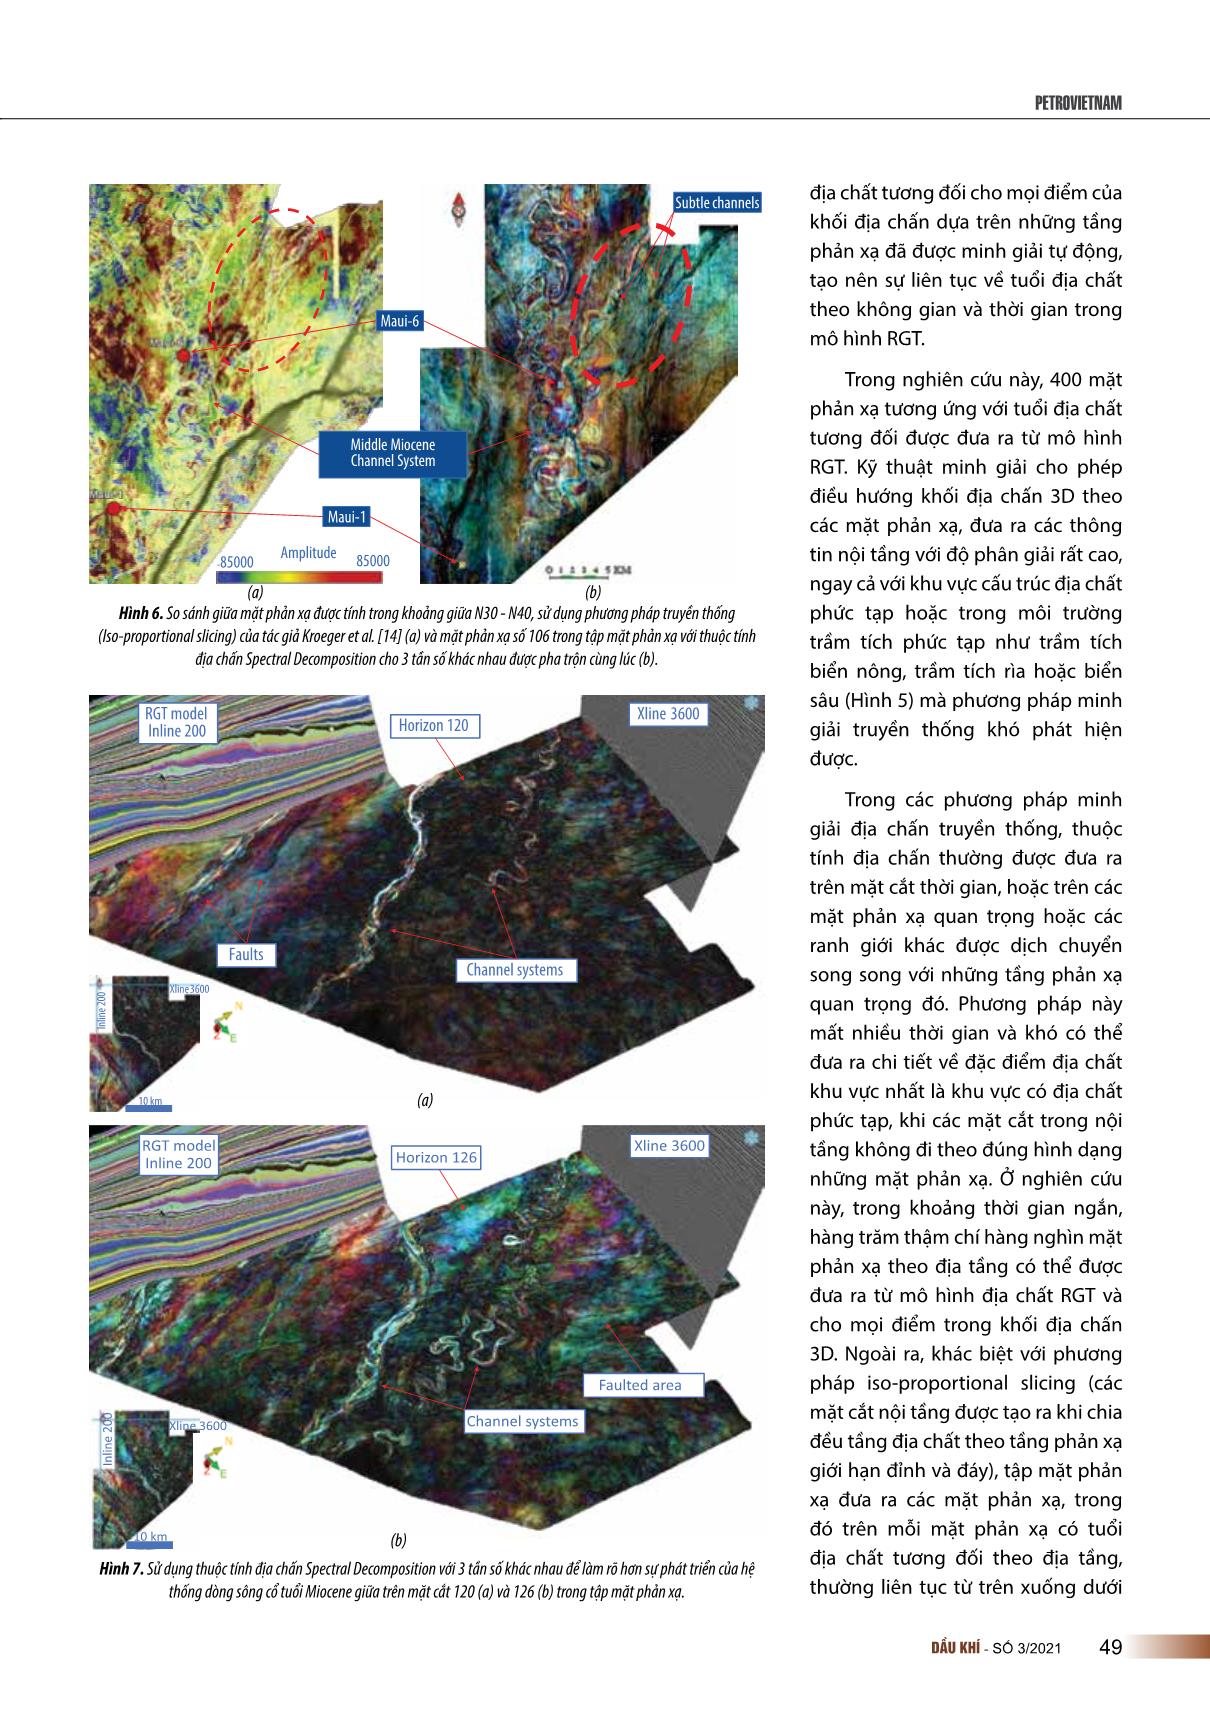 Đột phá trong minh giải tài liệu địa chấn 3D để phát hiện các bẫy chứa địa tầng trang 5